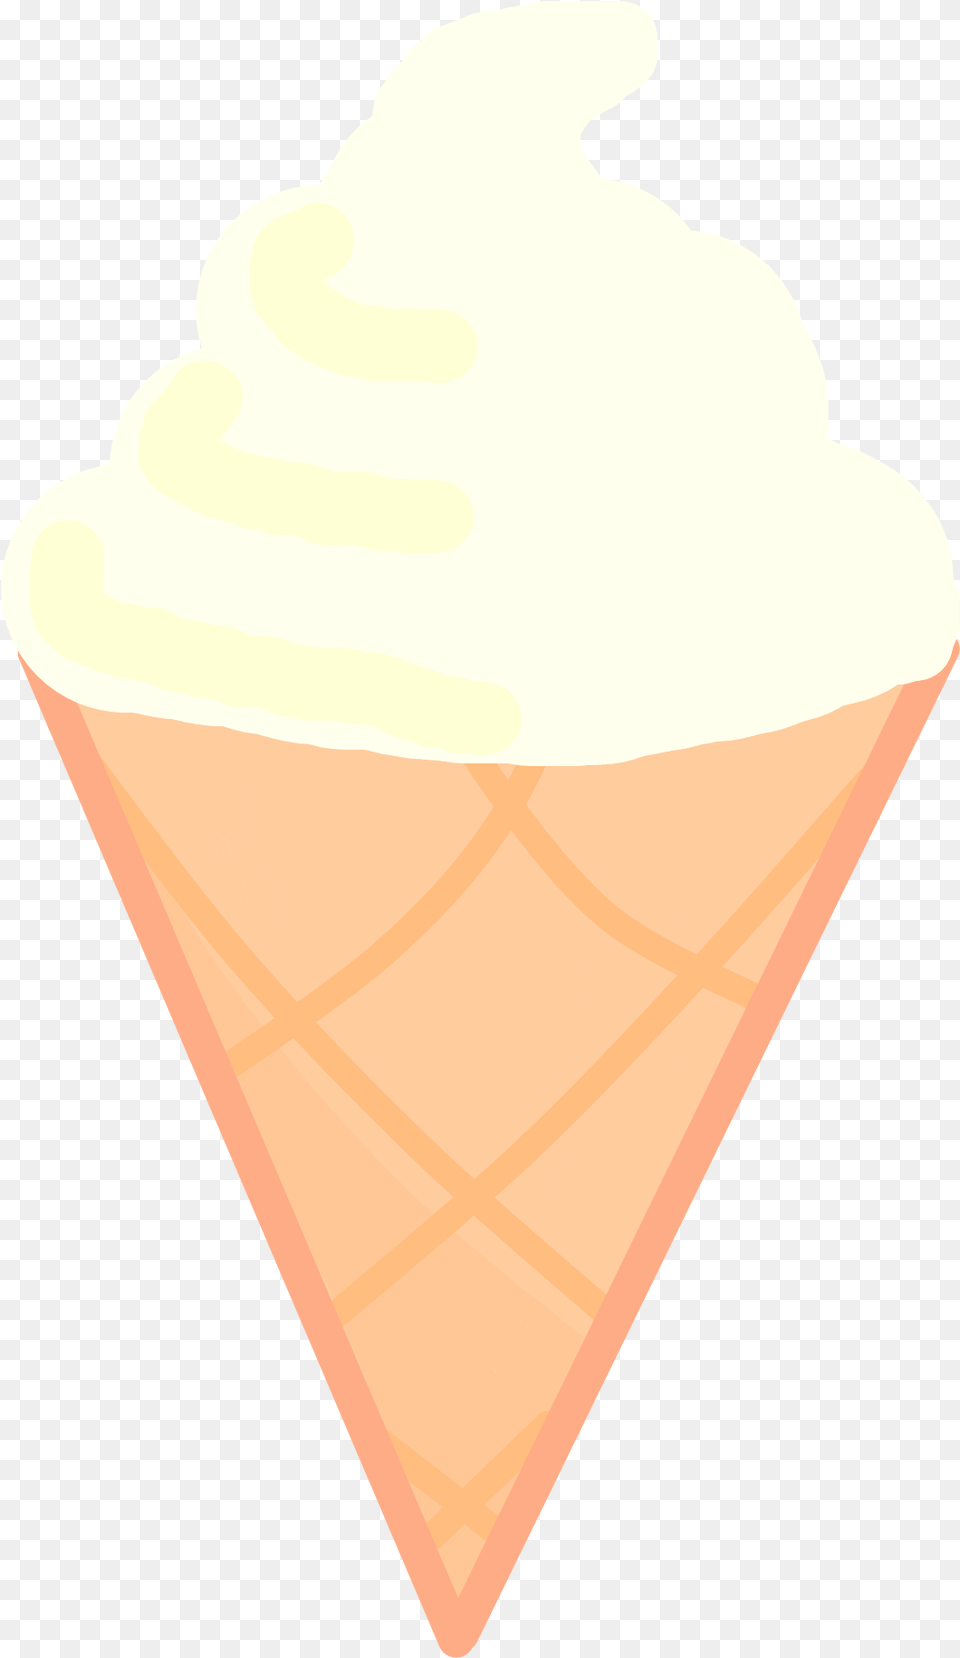 Ice Cream Ice Cream Cone, Dessert, Food, Ice Cream, Person Png Image